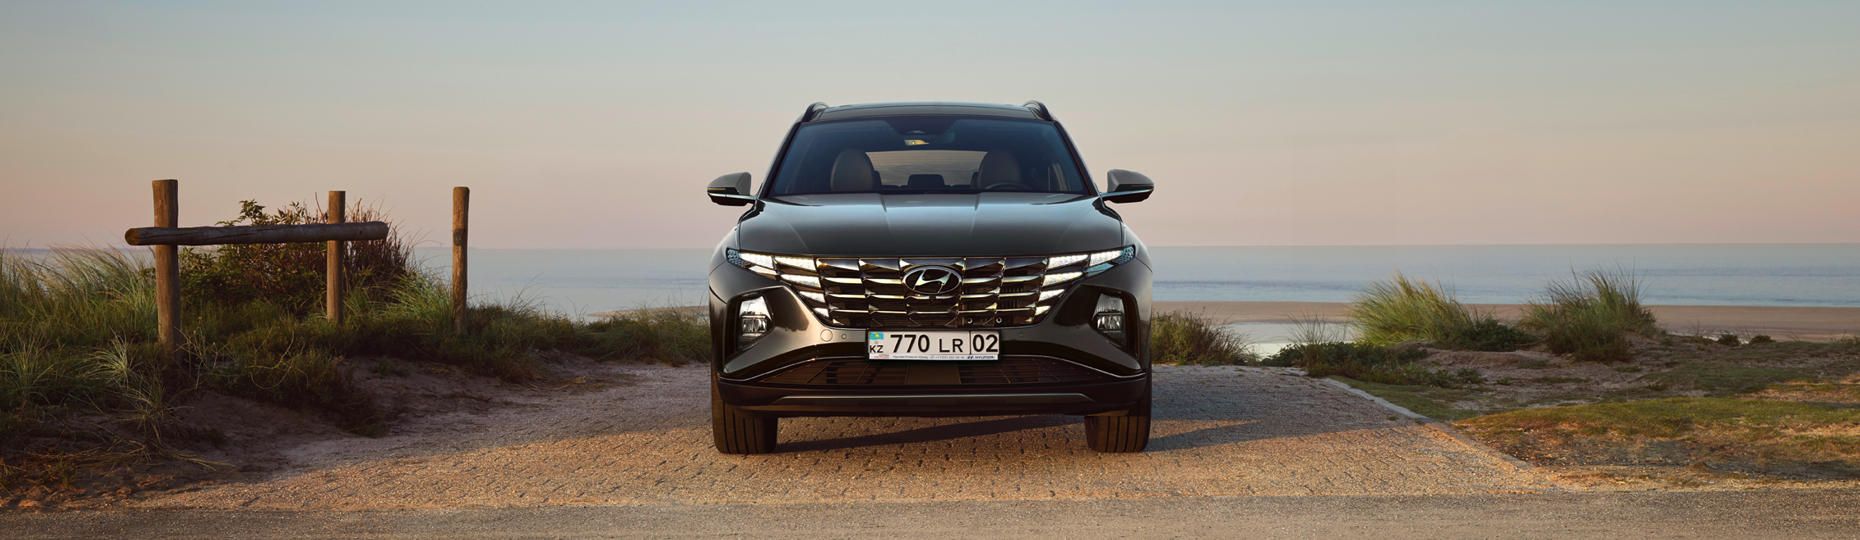 Безопасность нового Hyundai Tucson | Официальный дилер в Алматы